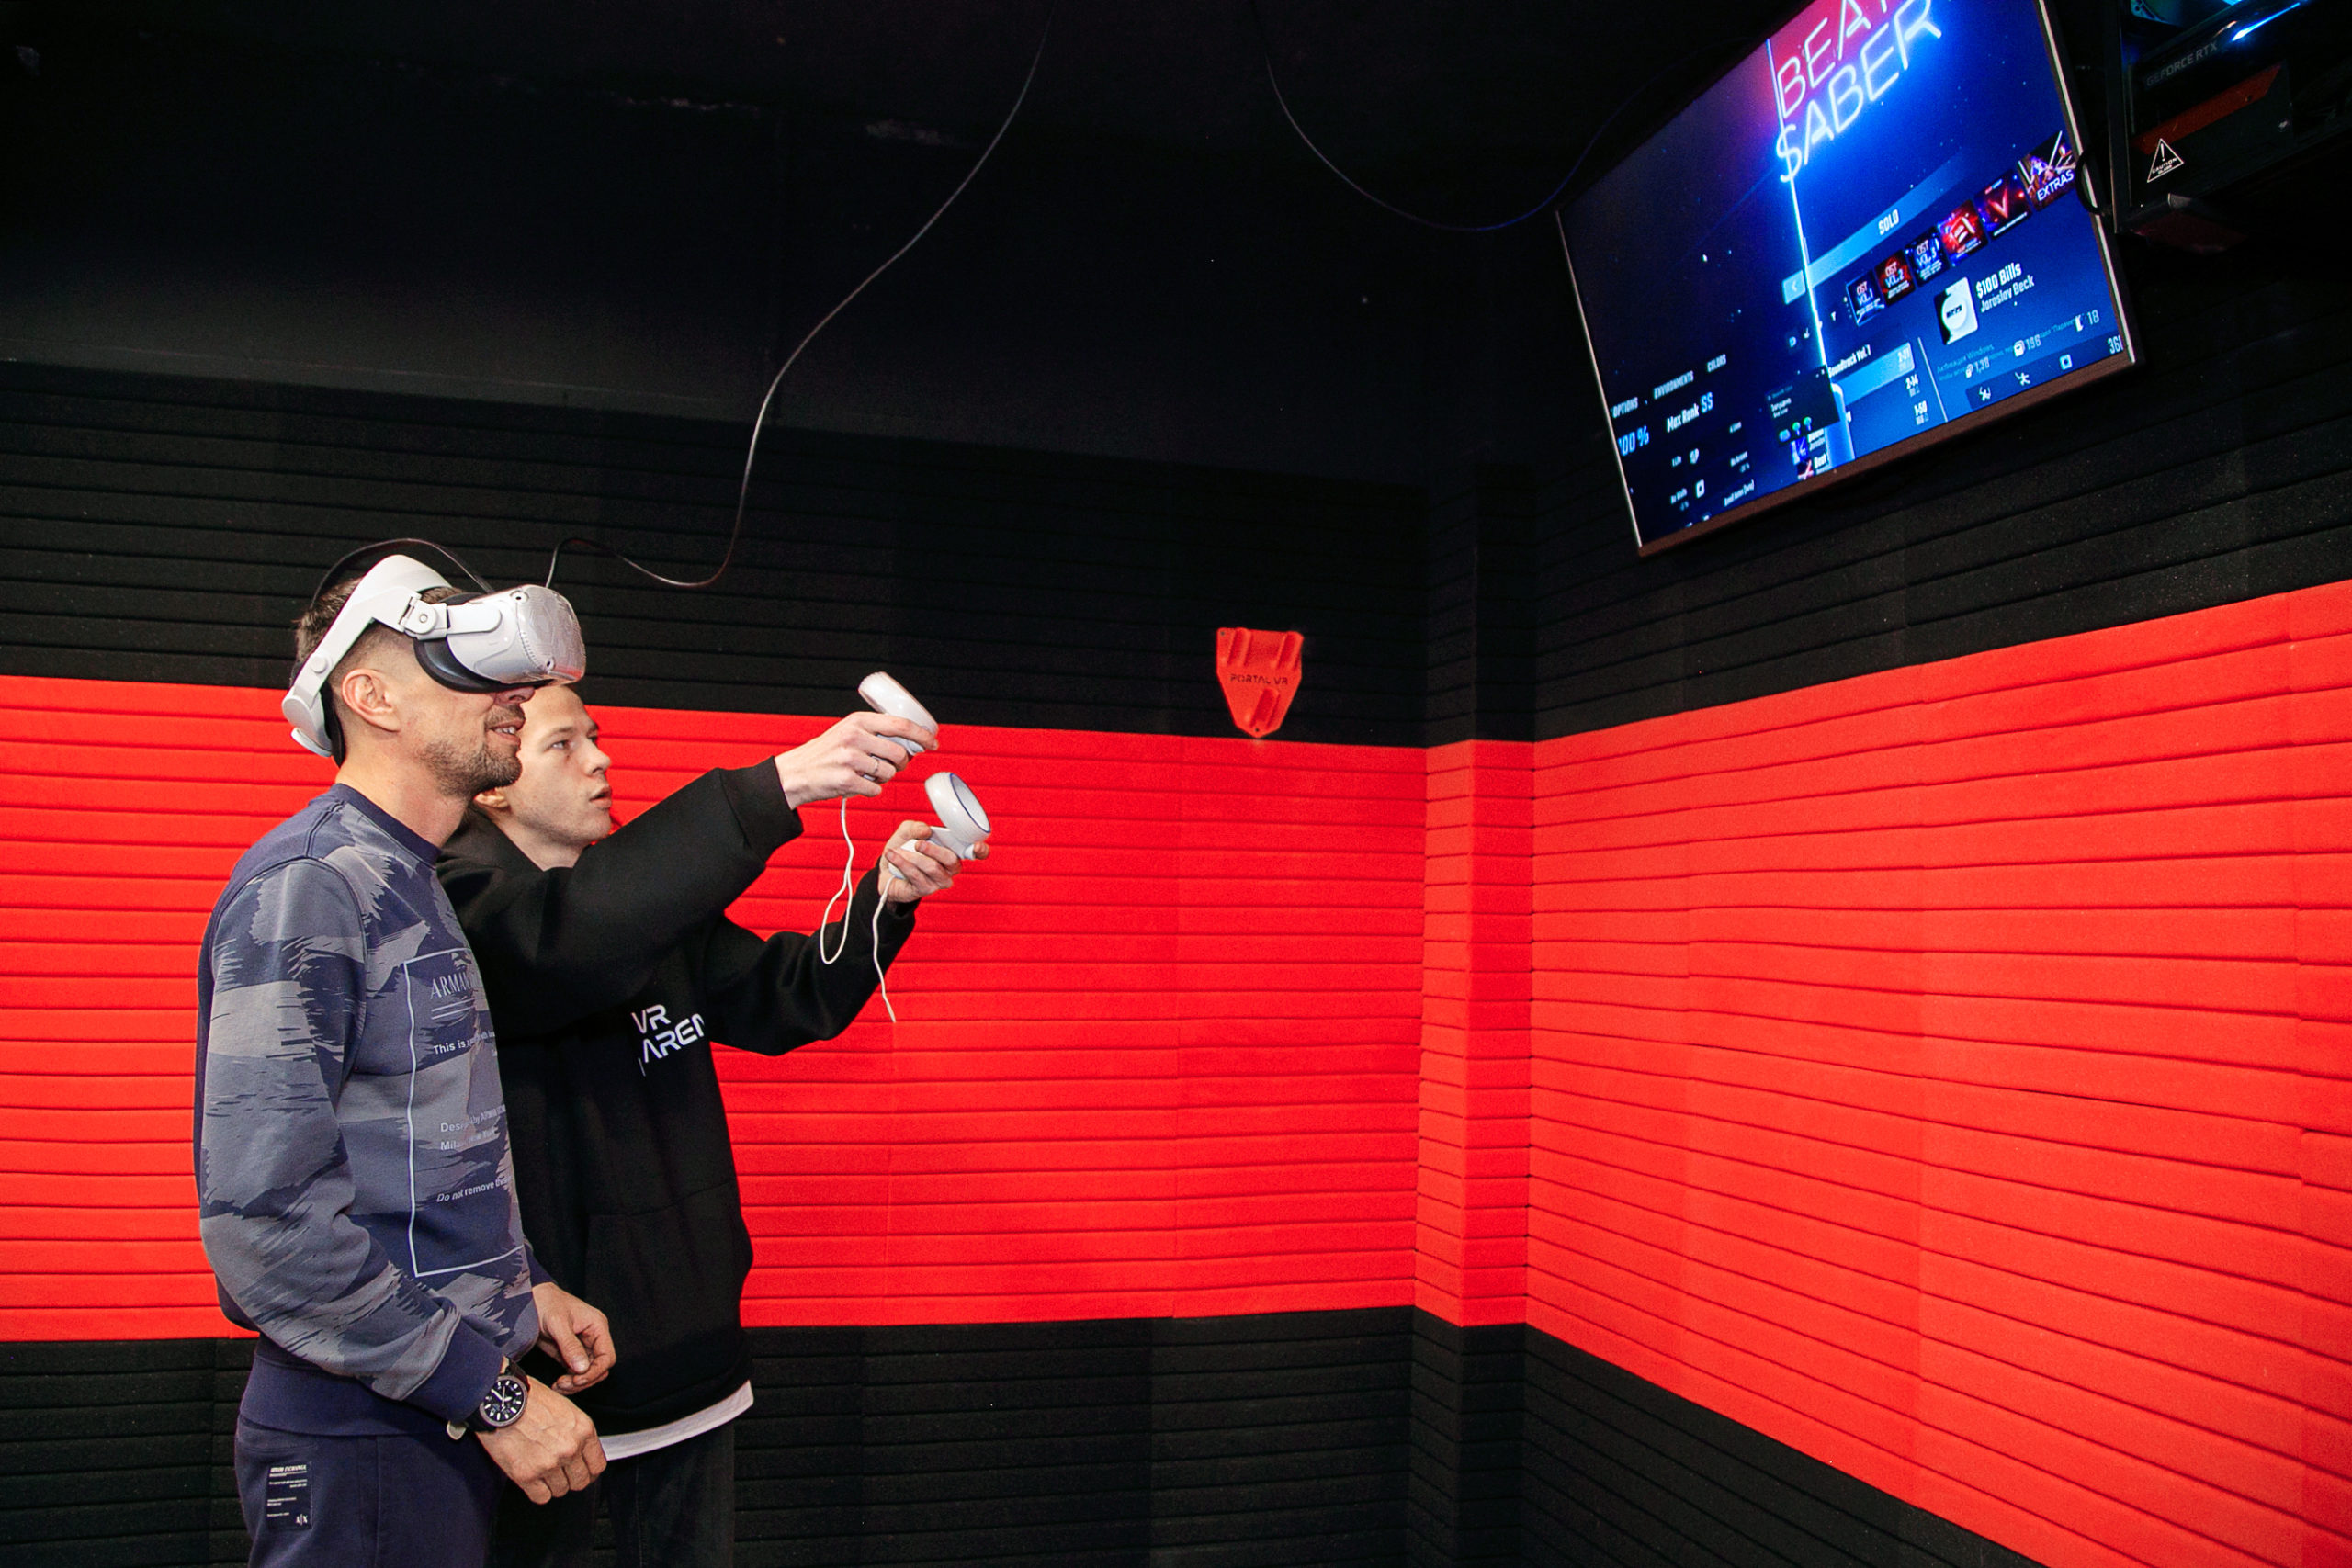 Игра в шлемах виртуальной реальности